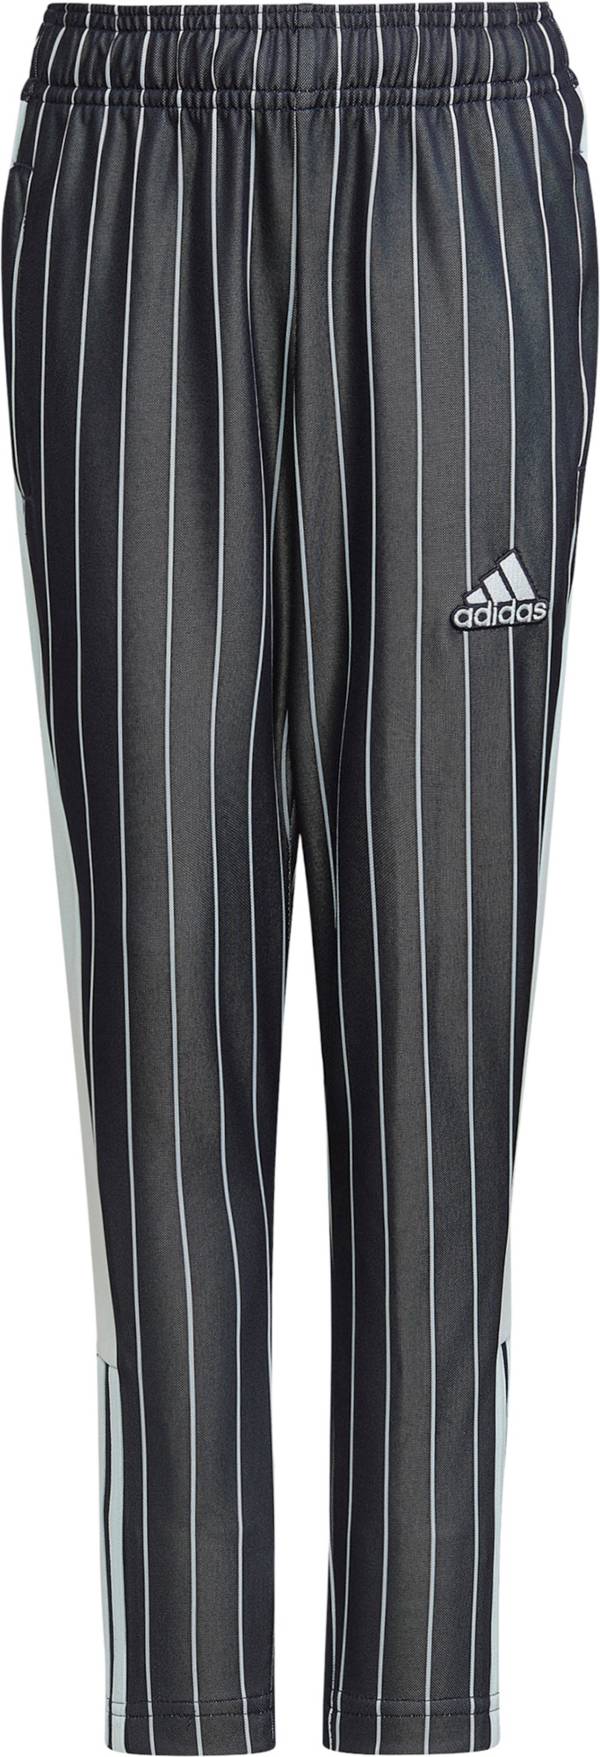 adidas Boys' Tiro VIP Pants product image